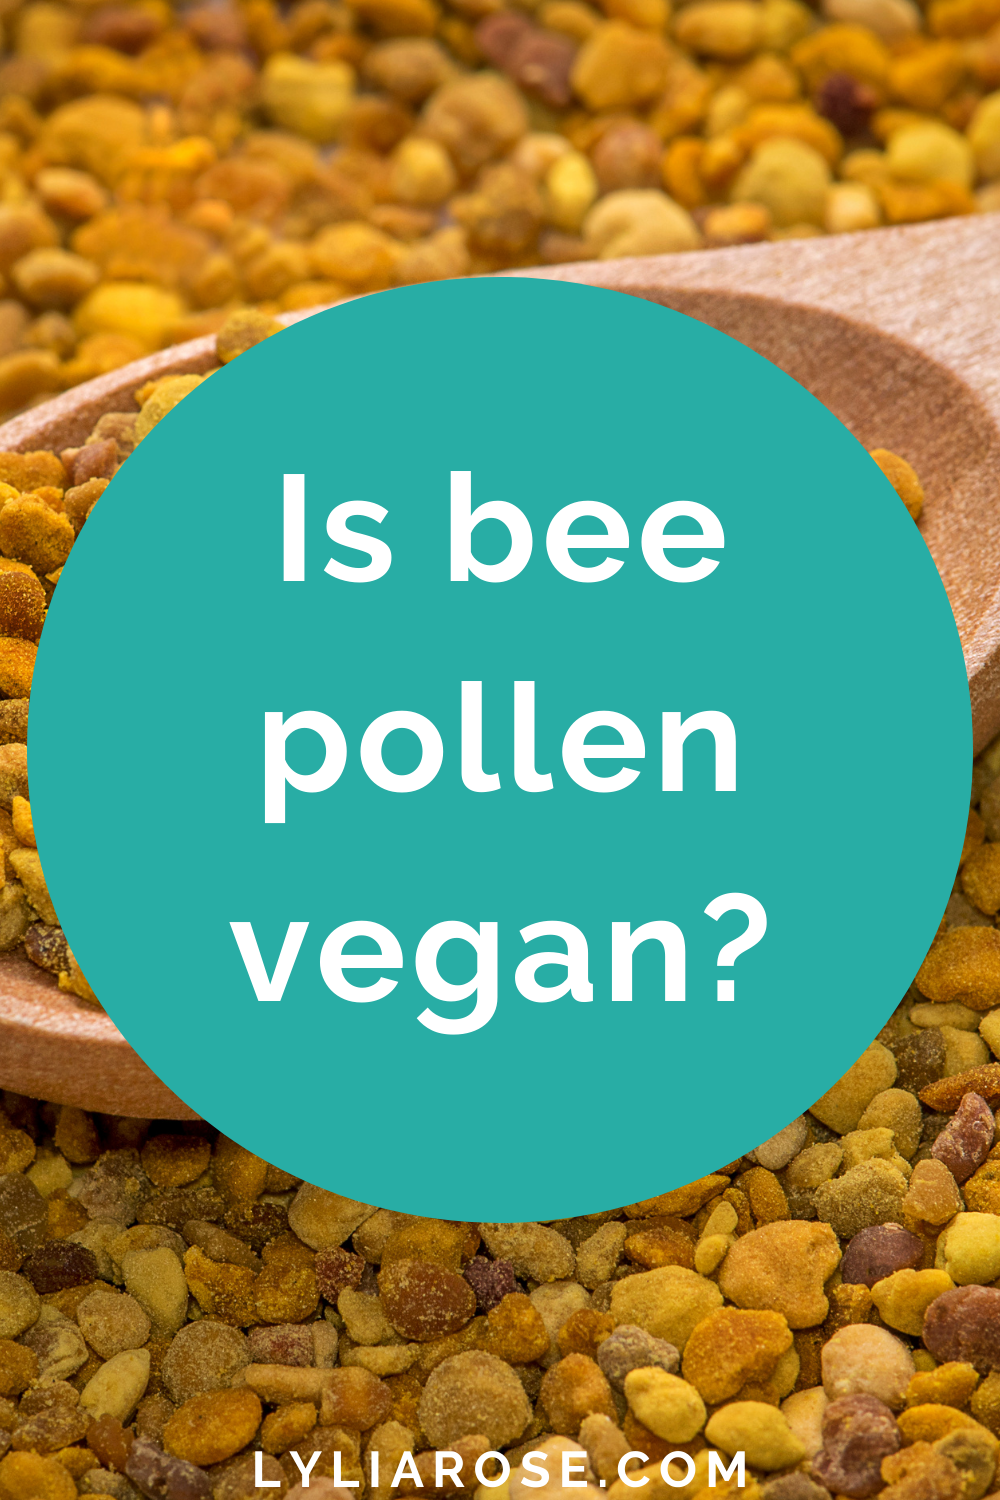 Is bee pollen vegan